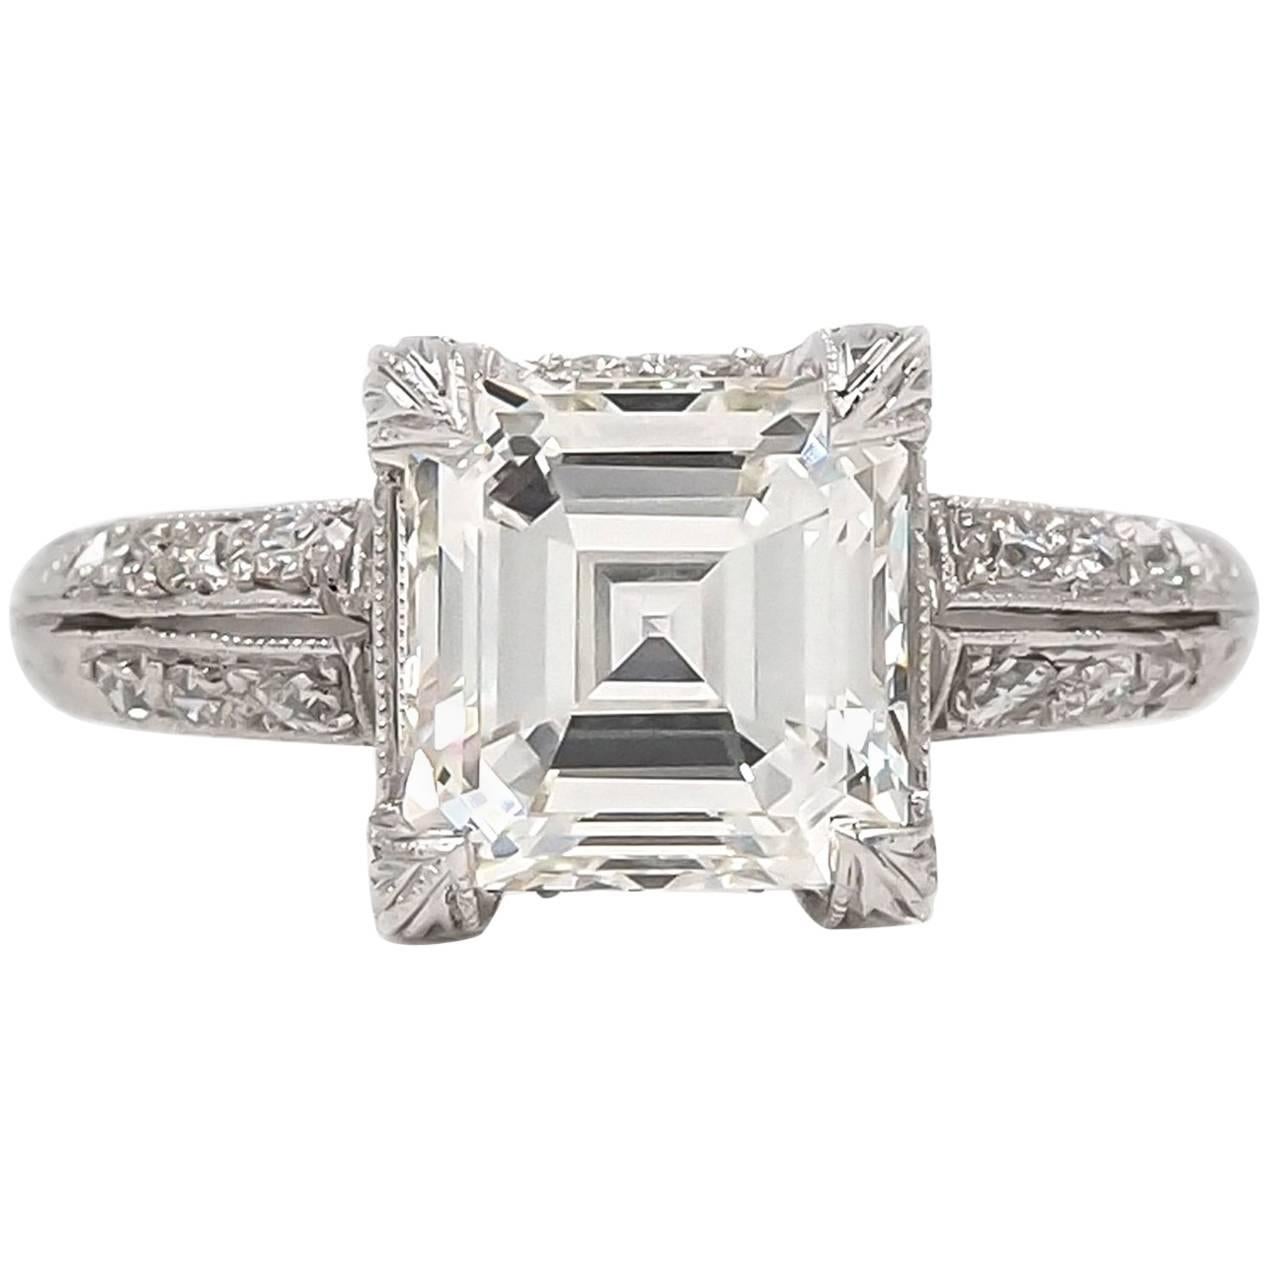 Edwardian Era 2.04 Carat Square Cut Diamond Engagement Ring